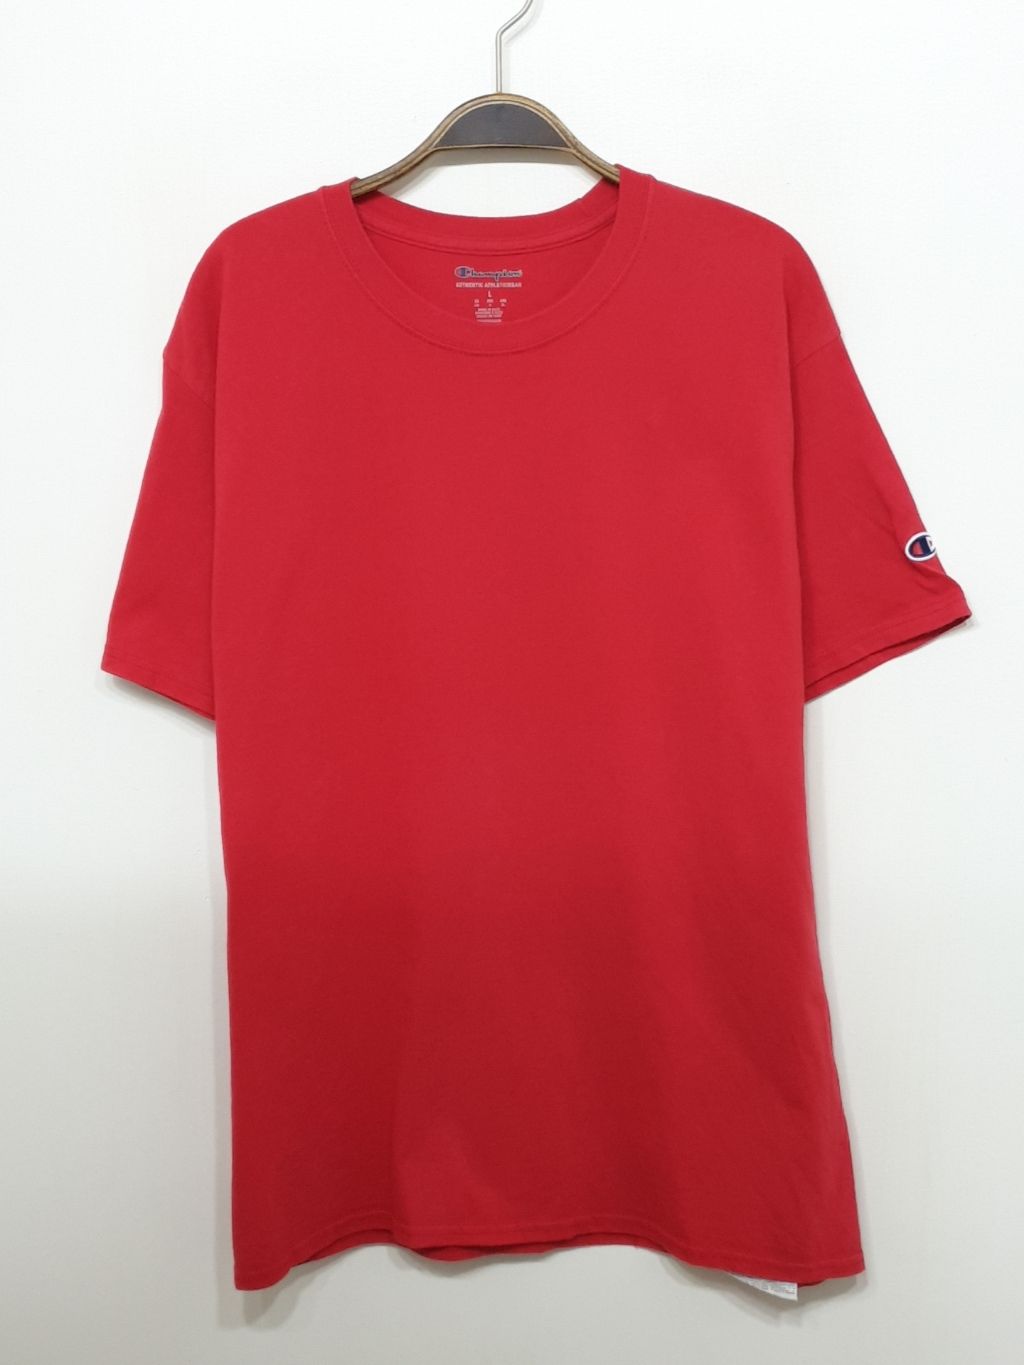 (M) 챔피온 반팔티 빨강 라운드 면티셔츠 캐주얼